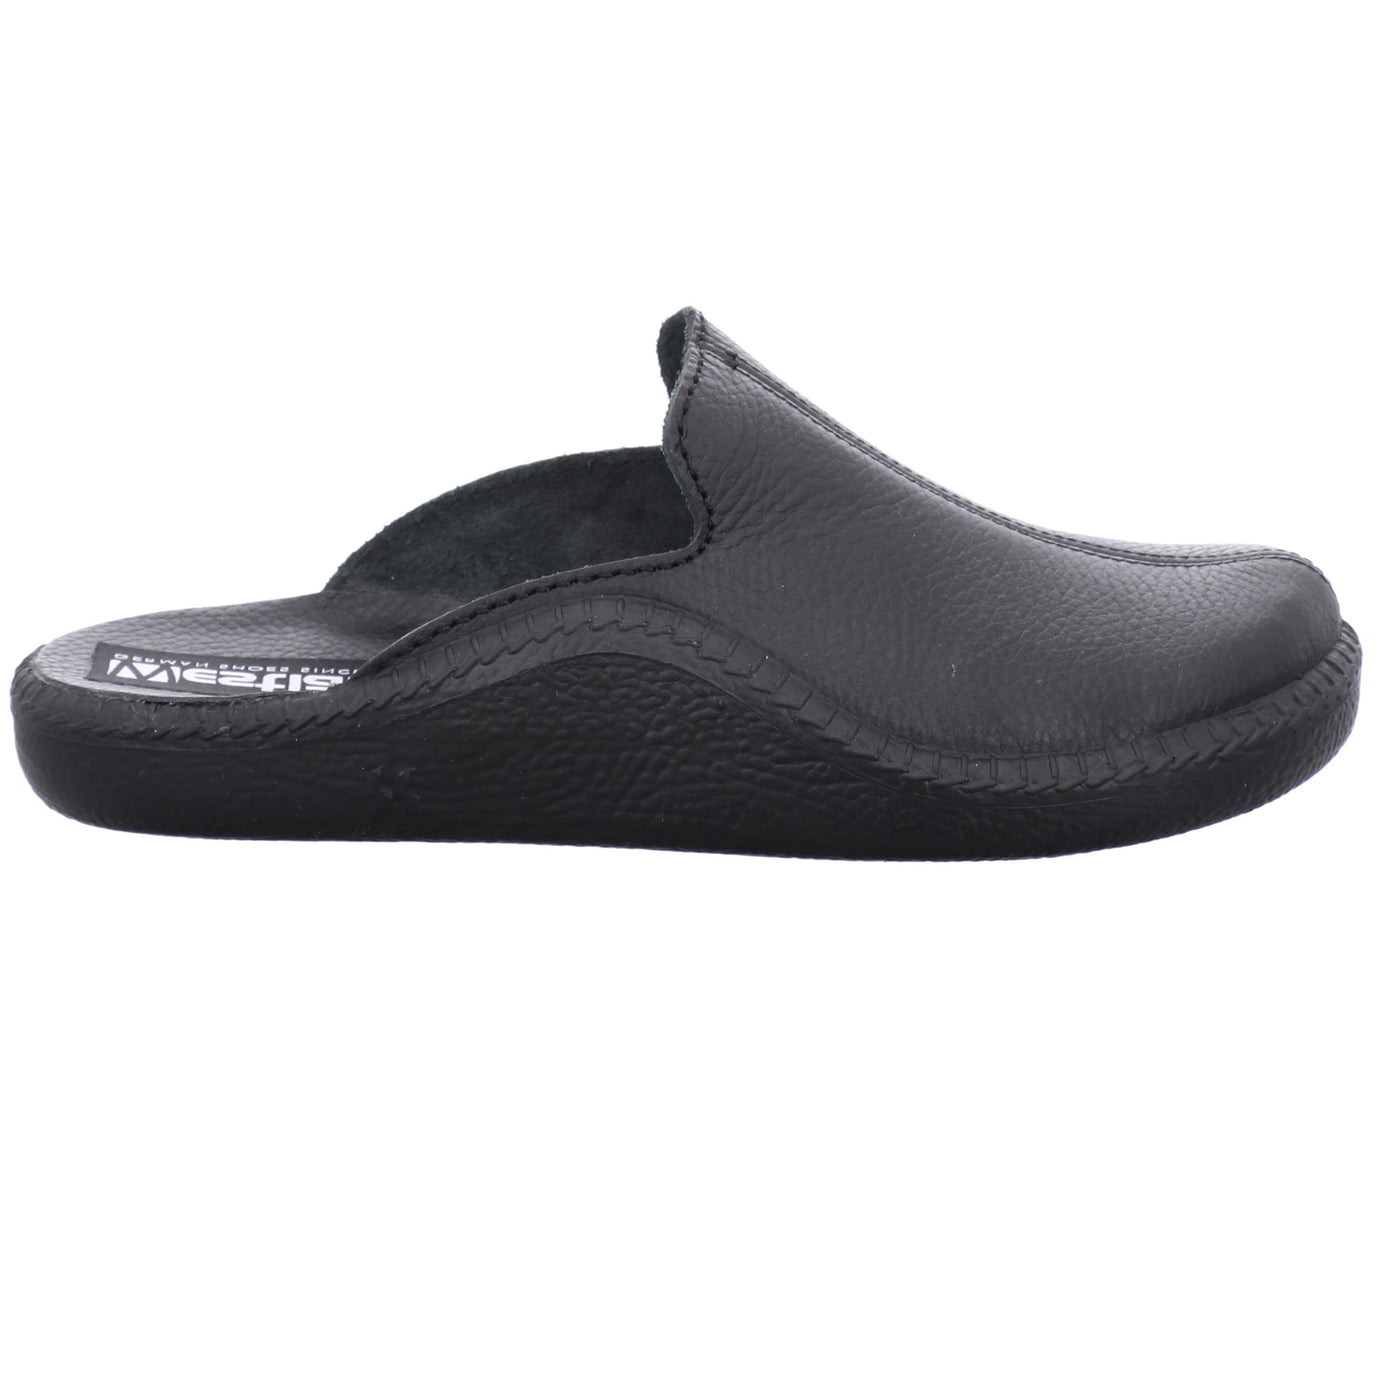 Romika Westland Monaco 202 G | Chaussures confortables - Pantoufles homme